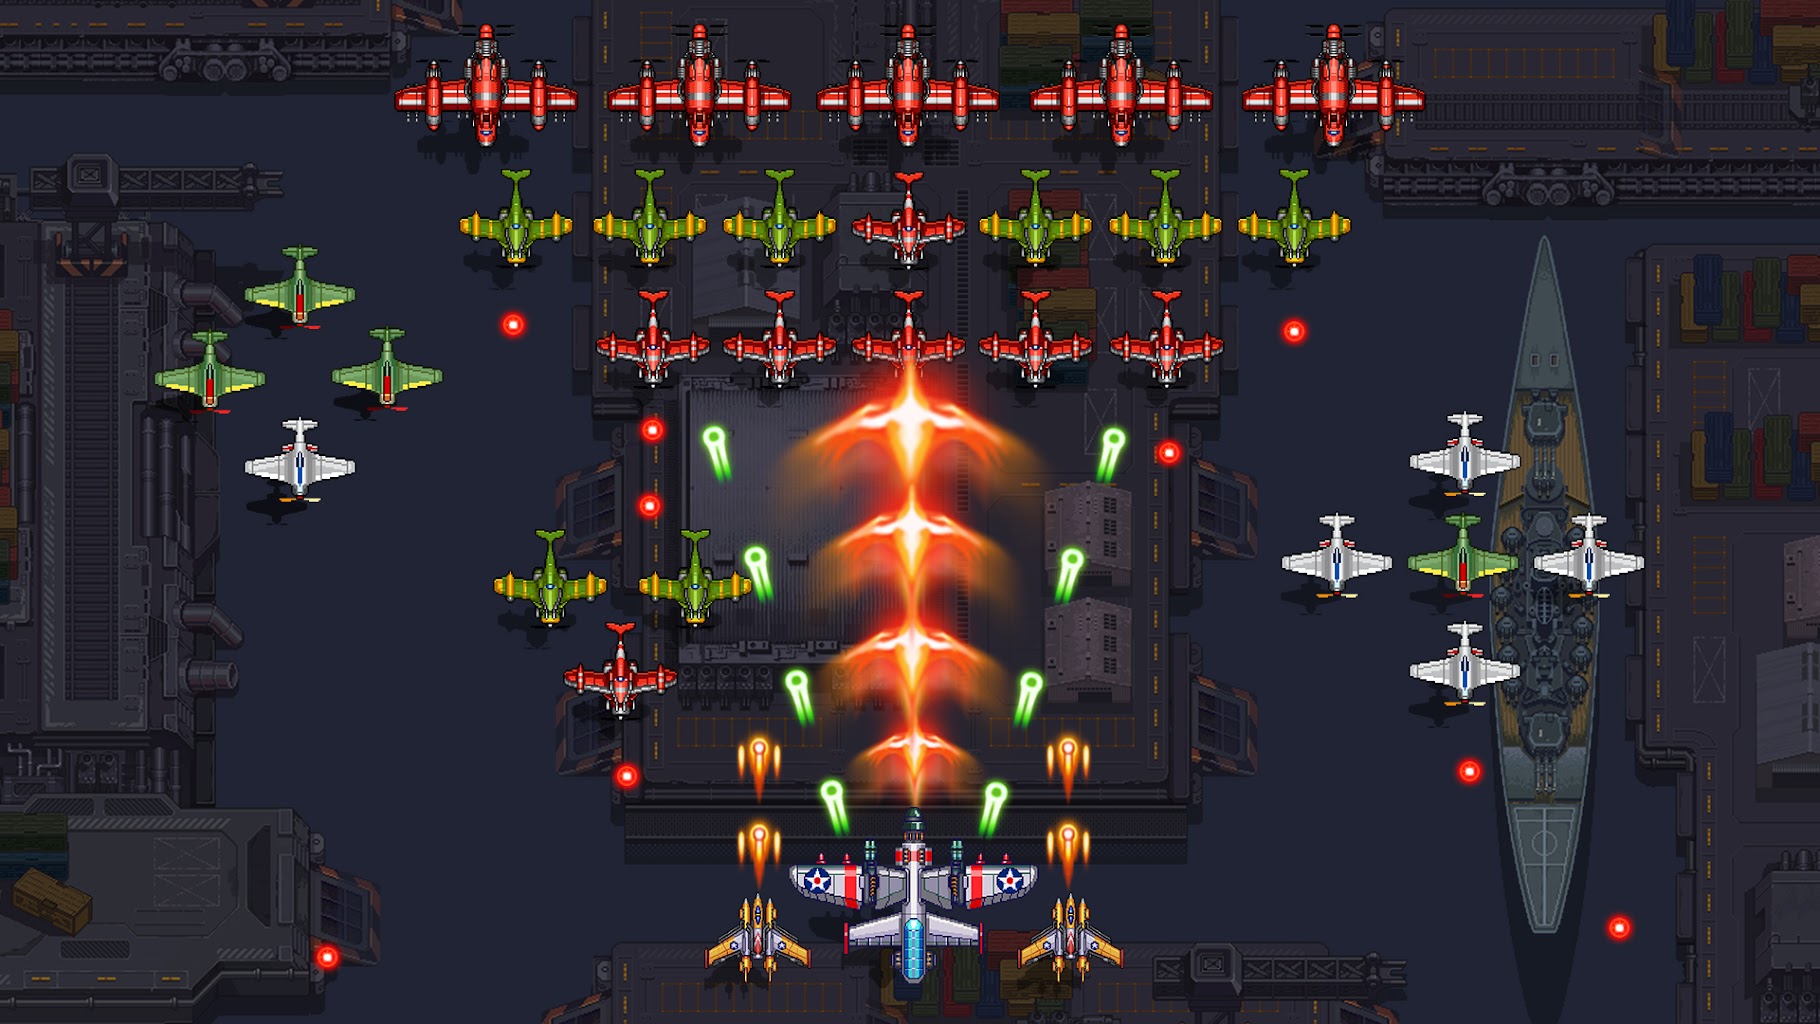 1945 Air Force: Airplane games Screenshot 5